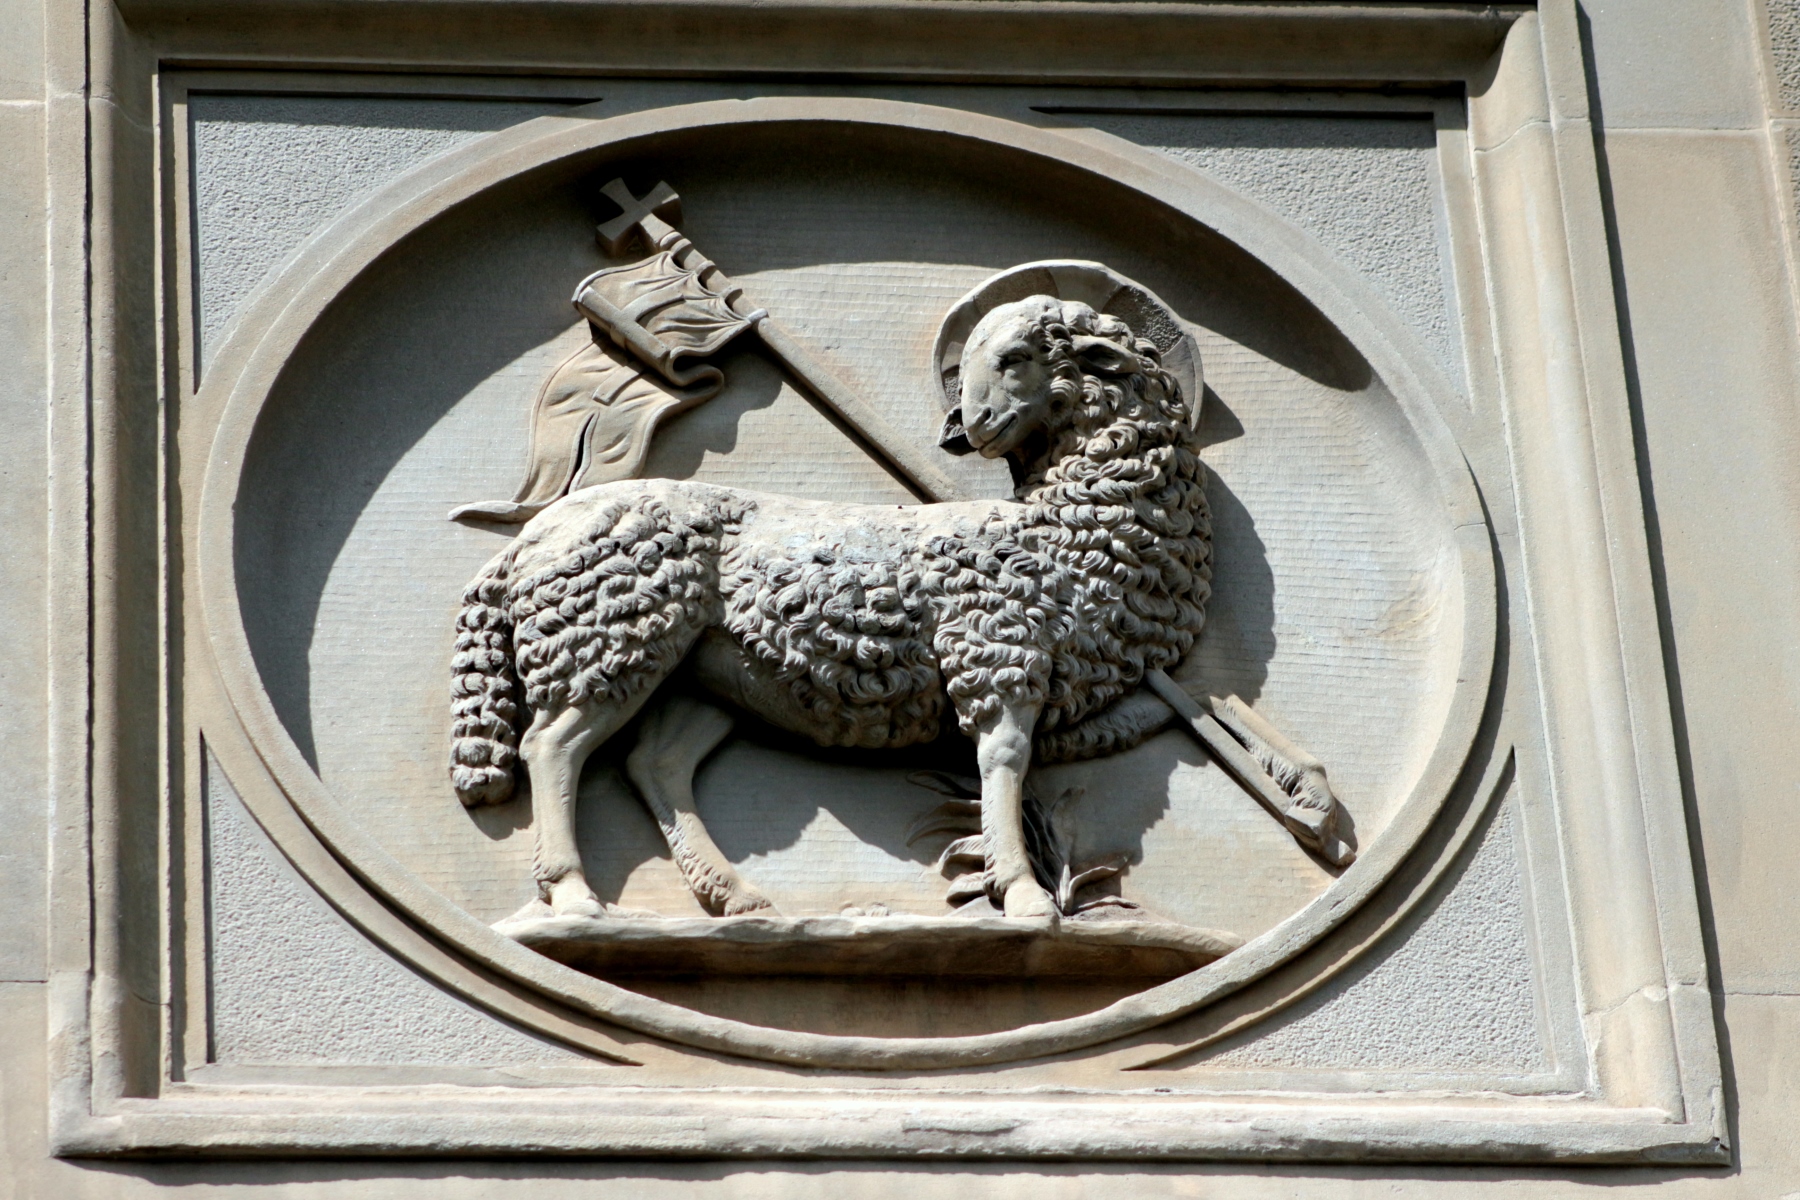 La Camera di commercio di Firenze resta aperta (foto Antonello Serino Redazione Met)